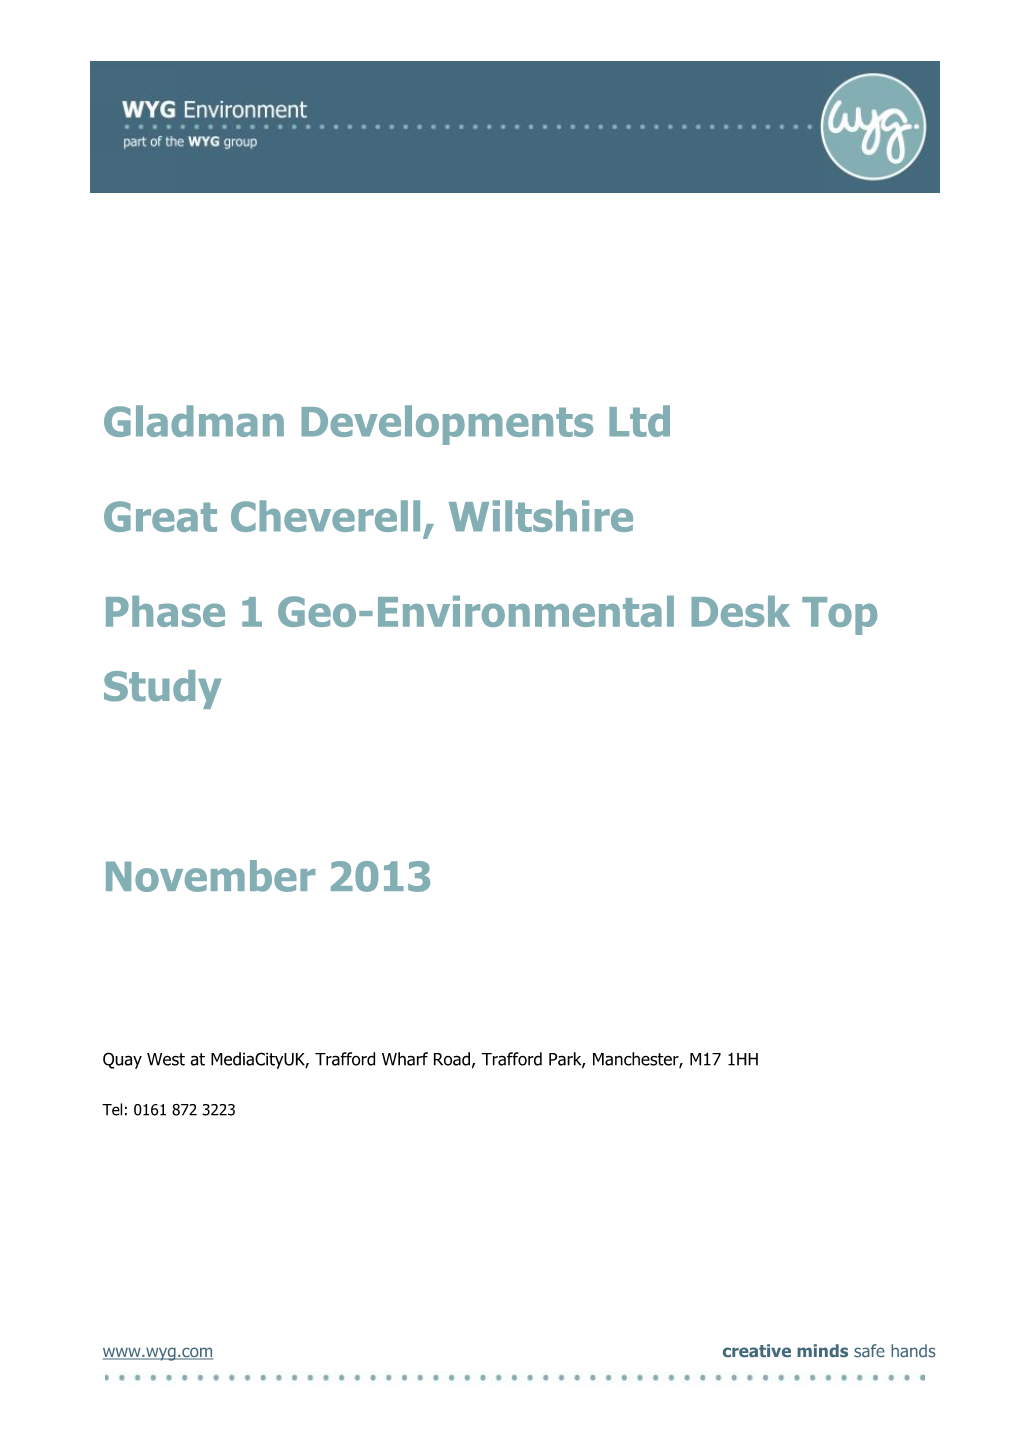 Gladman Developments Ltd Great Cheverell, Wiltshire Phase 1 Geo